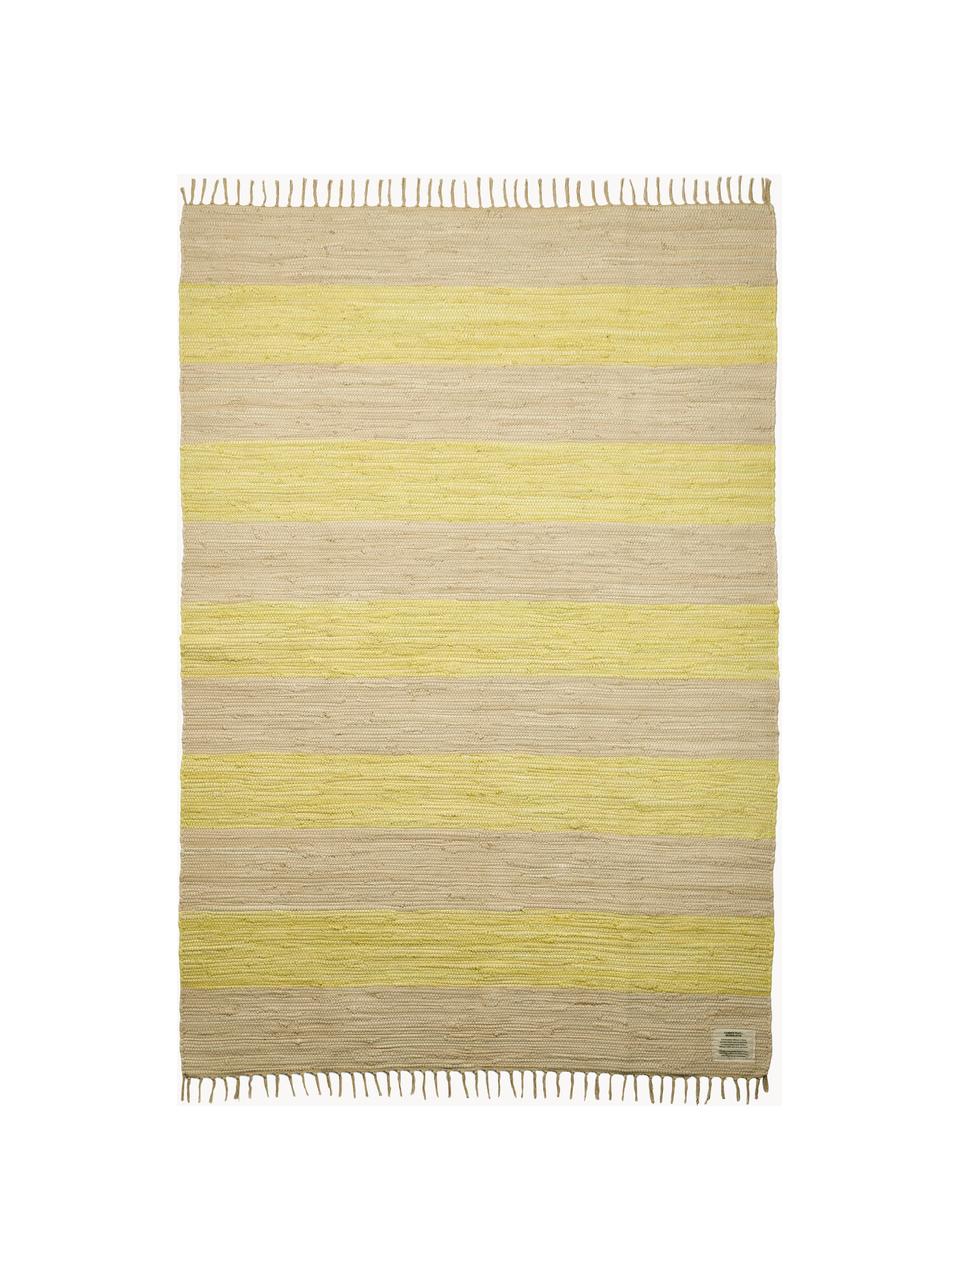 Ručně tkaný bavlněný koberec s třásněmi Chindi, 100 % bavlna, Světle žlutá, světle béžová, Š 60 cm, D 90 cm (velikost XXS)